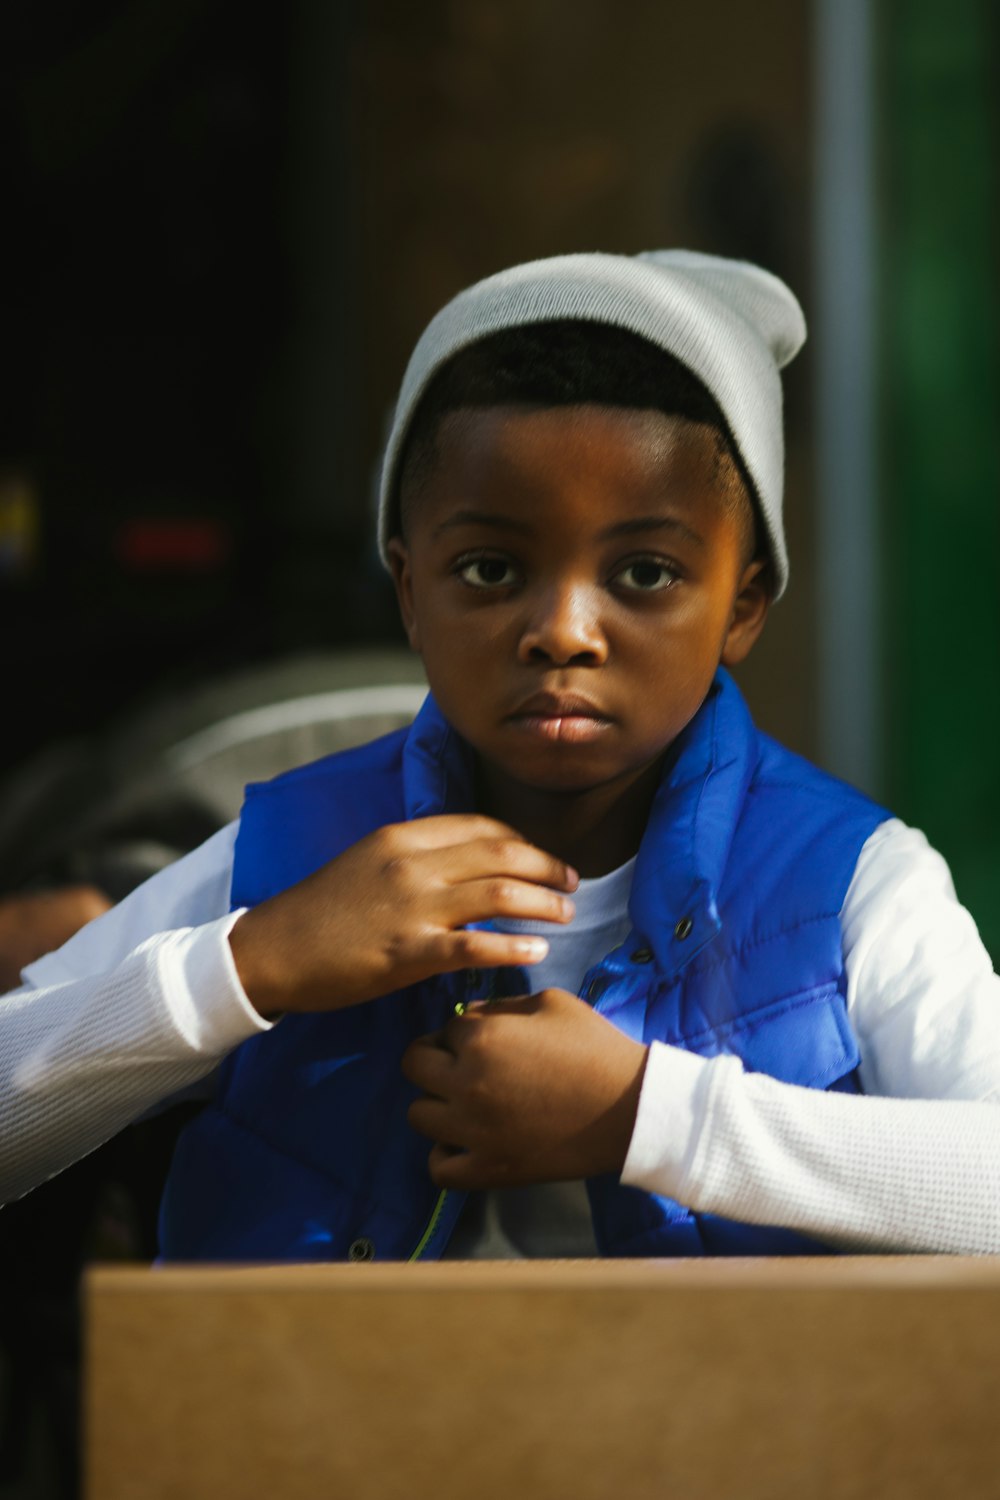 menino na camisa azul e branca de manga comprida vestindo boné de malha branco e preto